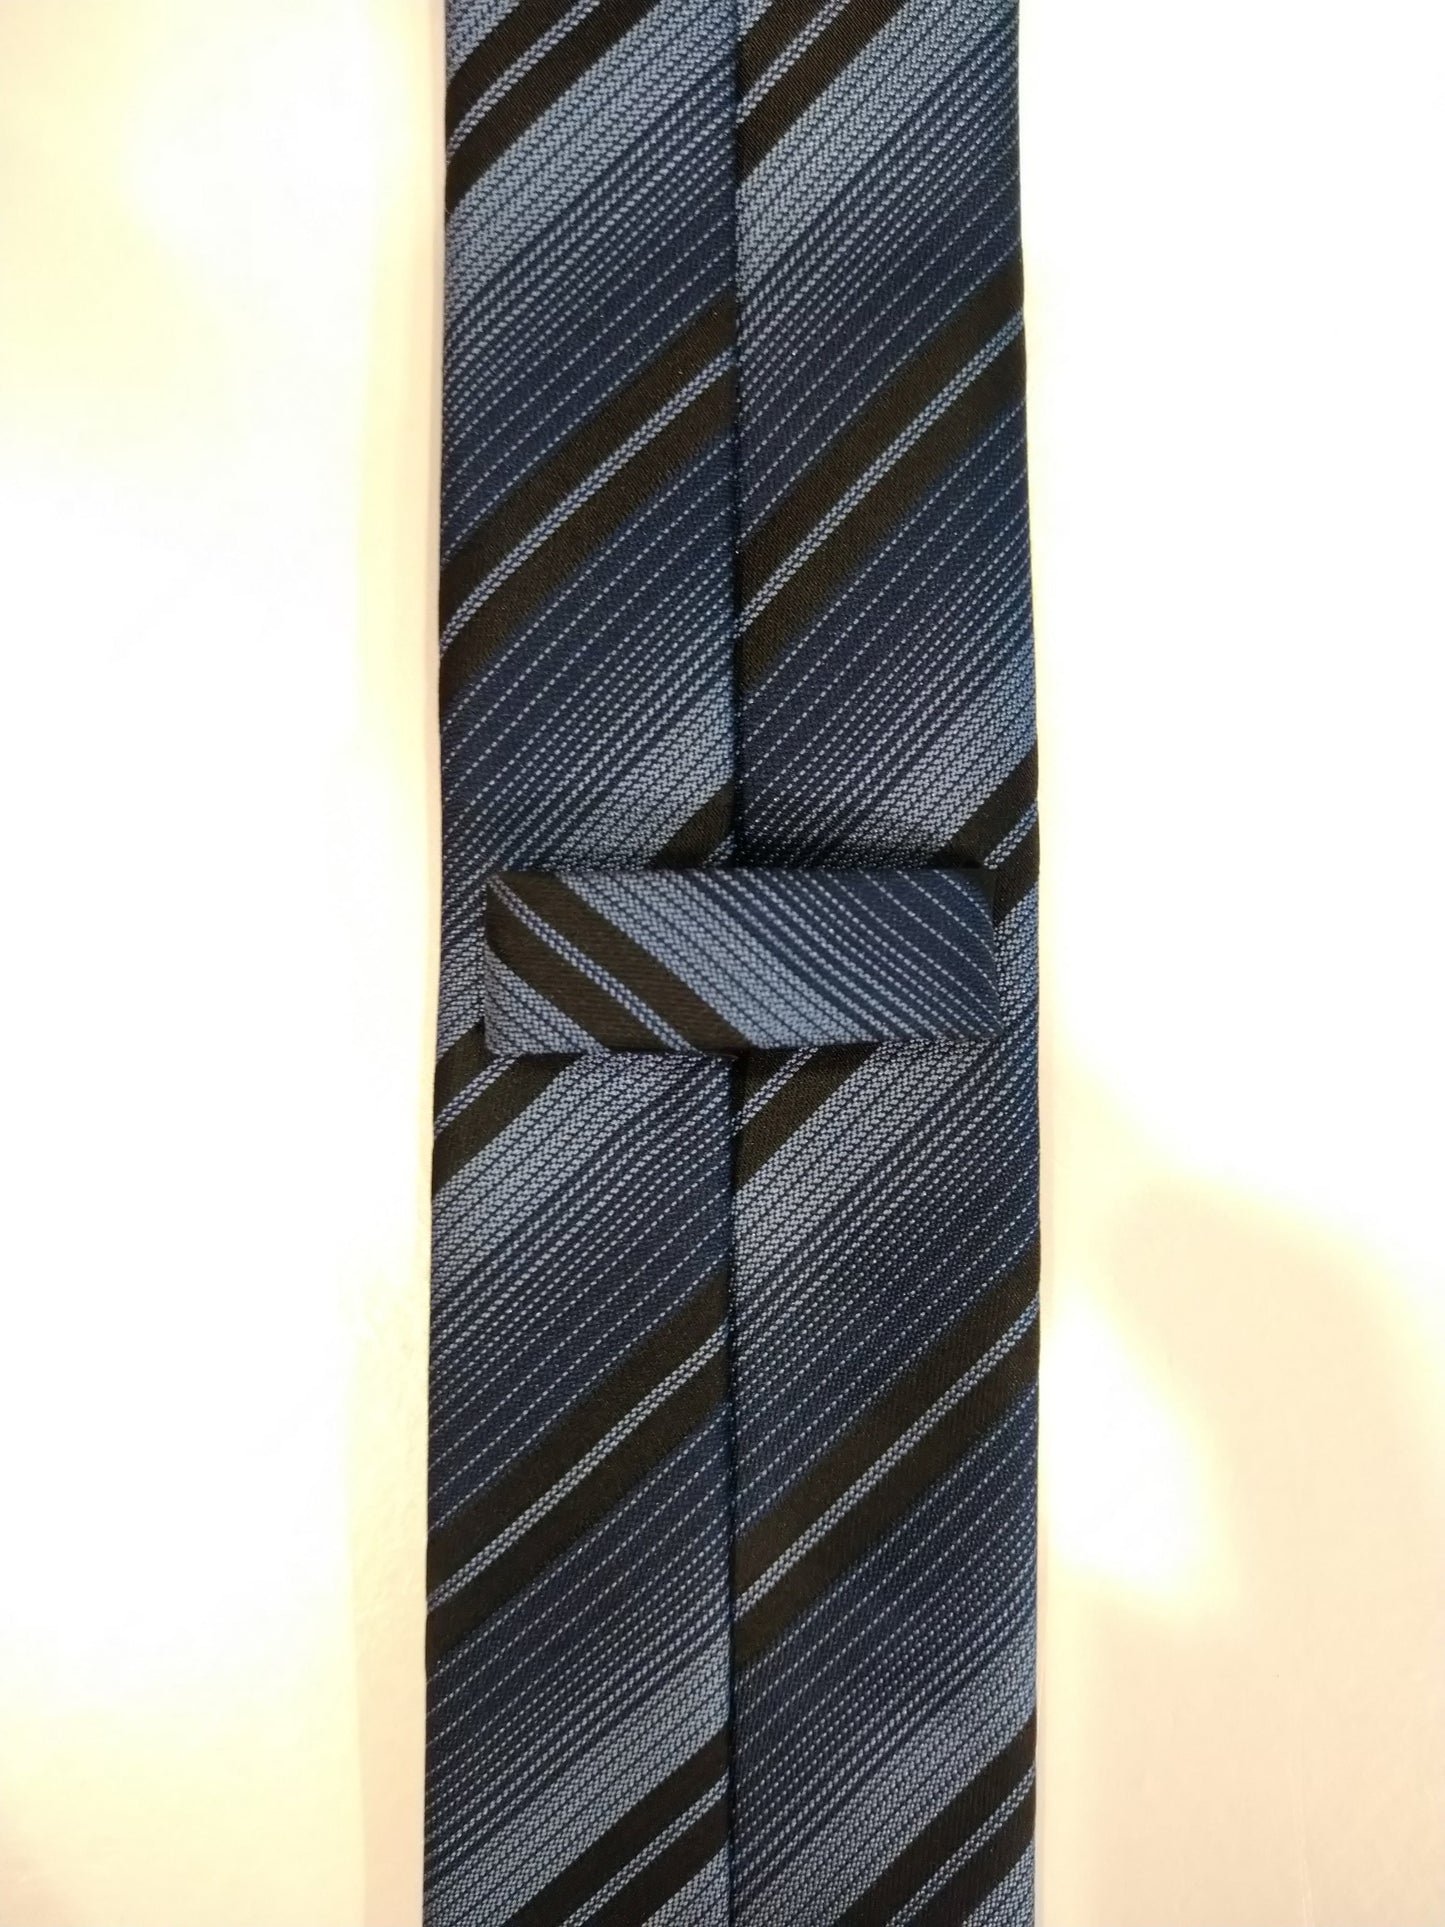 Estado de madera de cedro corbata de poliéster estrecho. Black Black Striped.